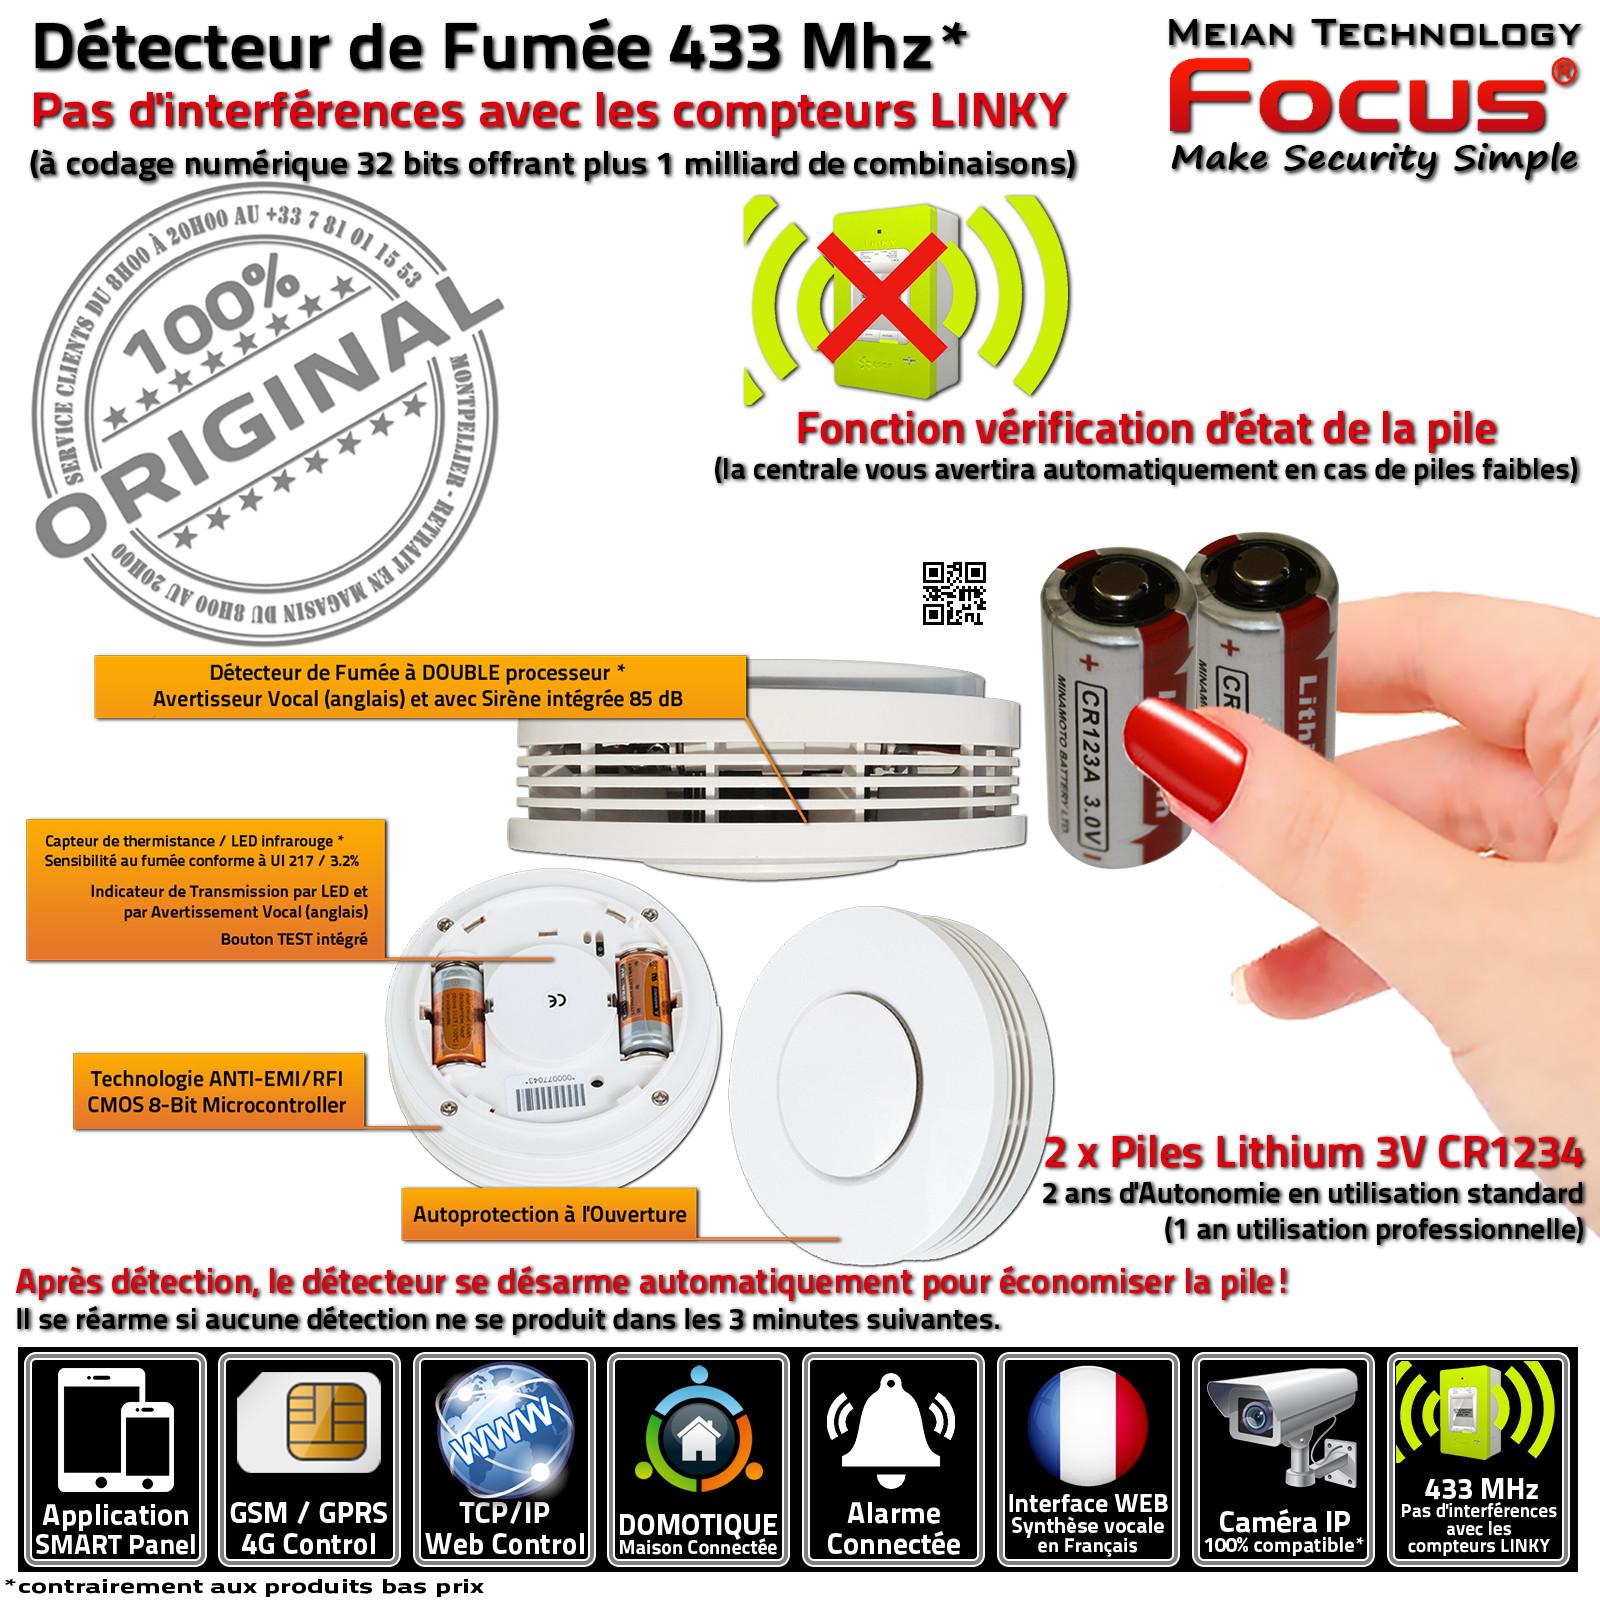 Bureaux Cabinets Garage Détecteur Avertisseur Intoxication Fumée 433 MHz Surveillance MD-2105R Maison Connectée Ethernet IP GSM